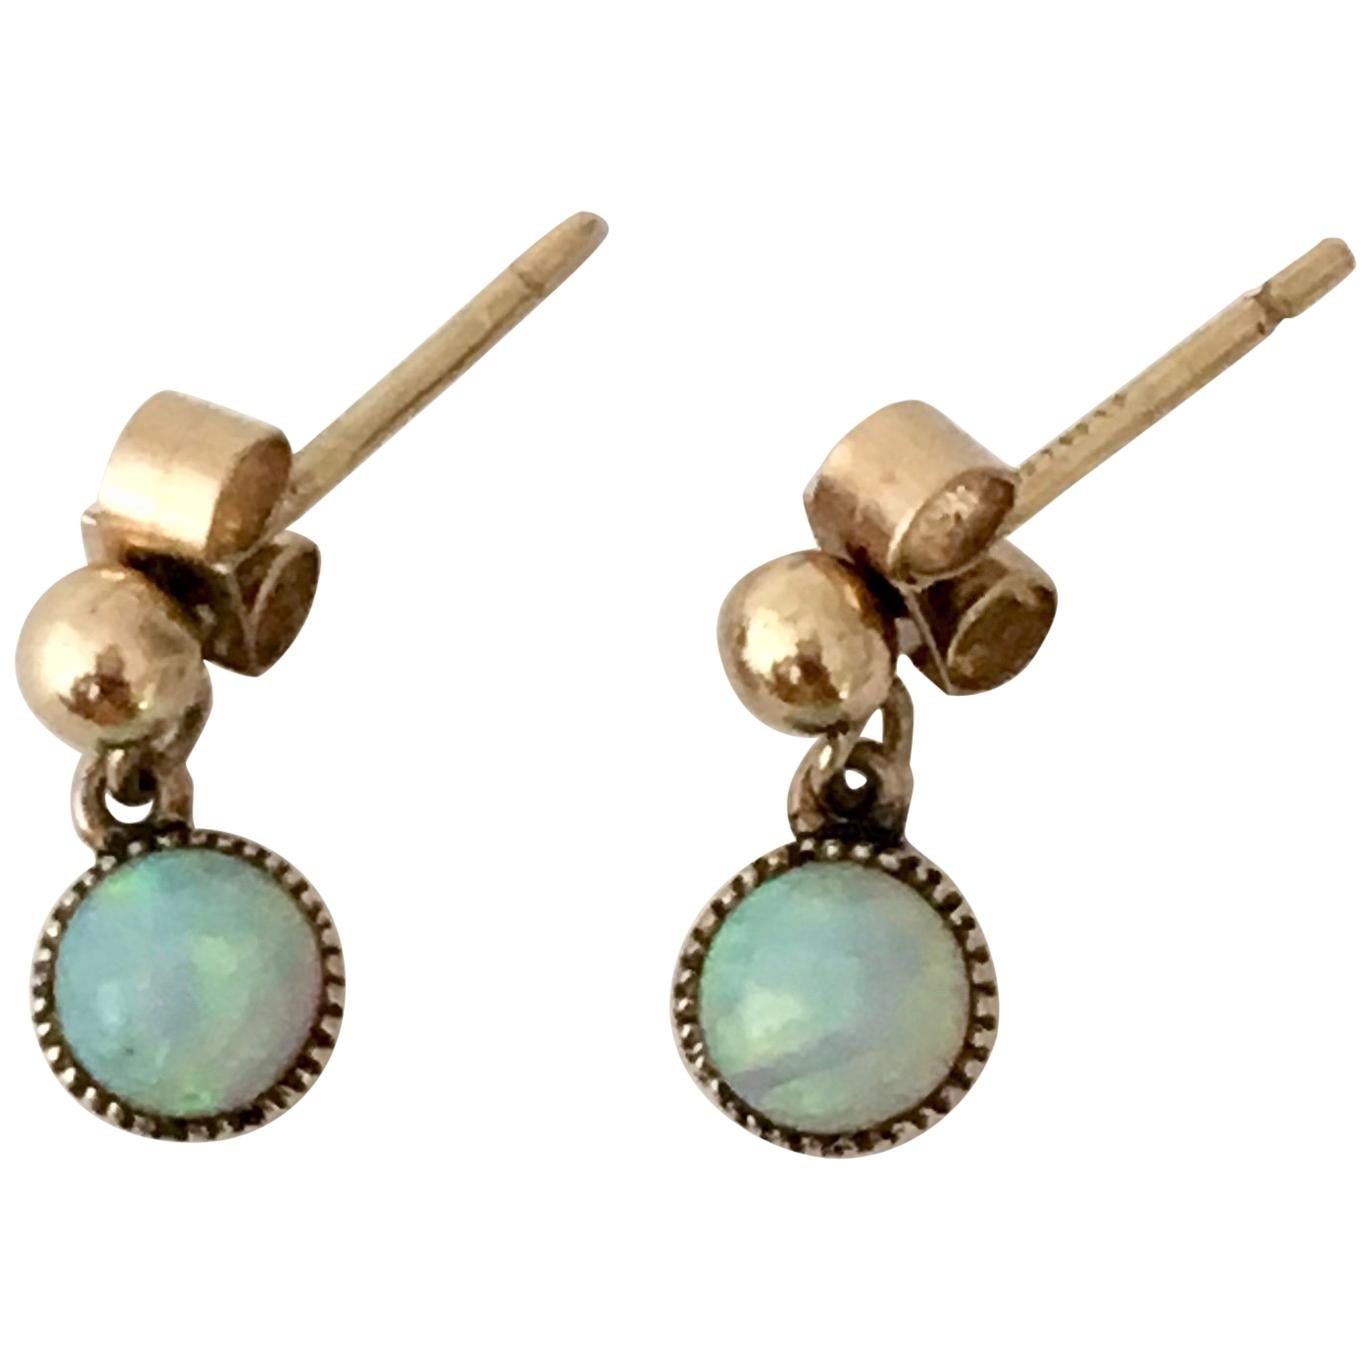 Opal Vintage Jewelry Gold Cabochon Gemstone Drop Earrings Millegrain Stud